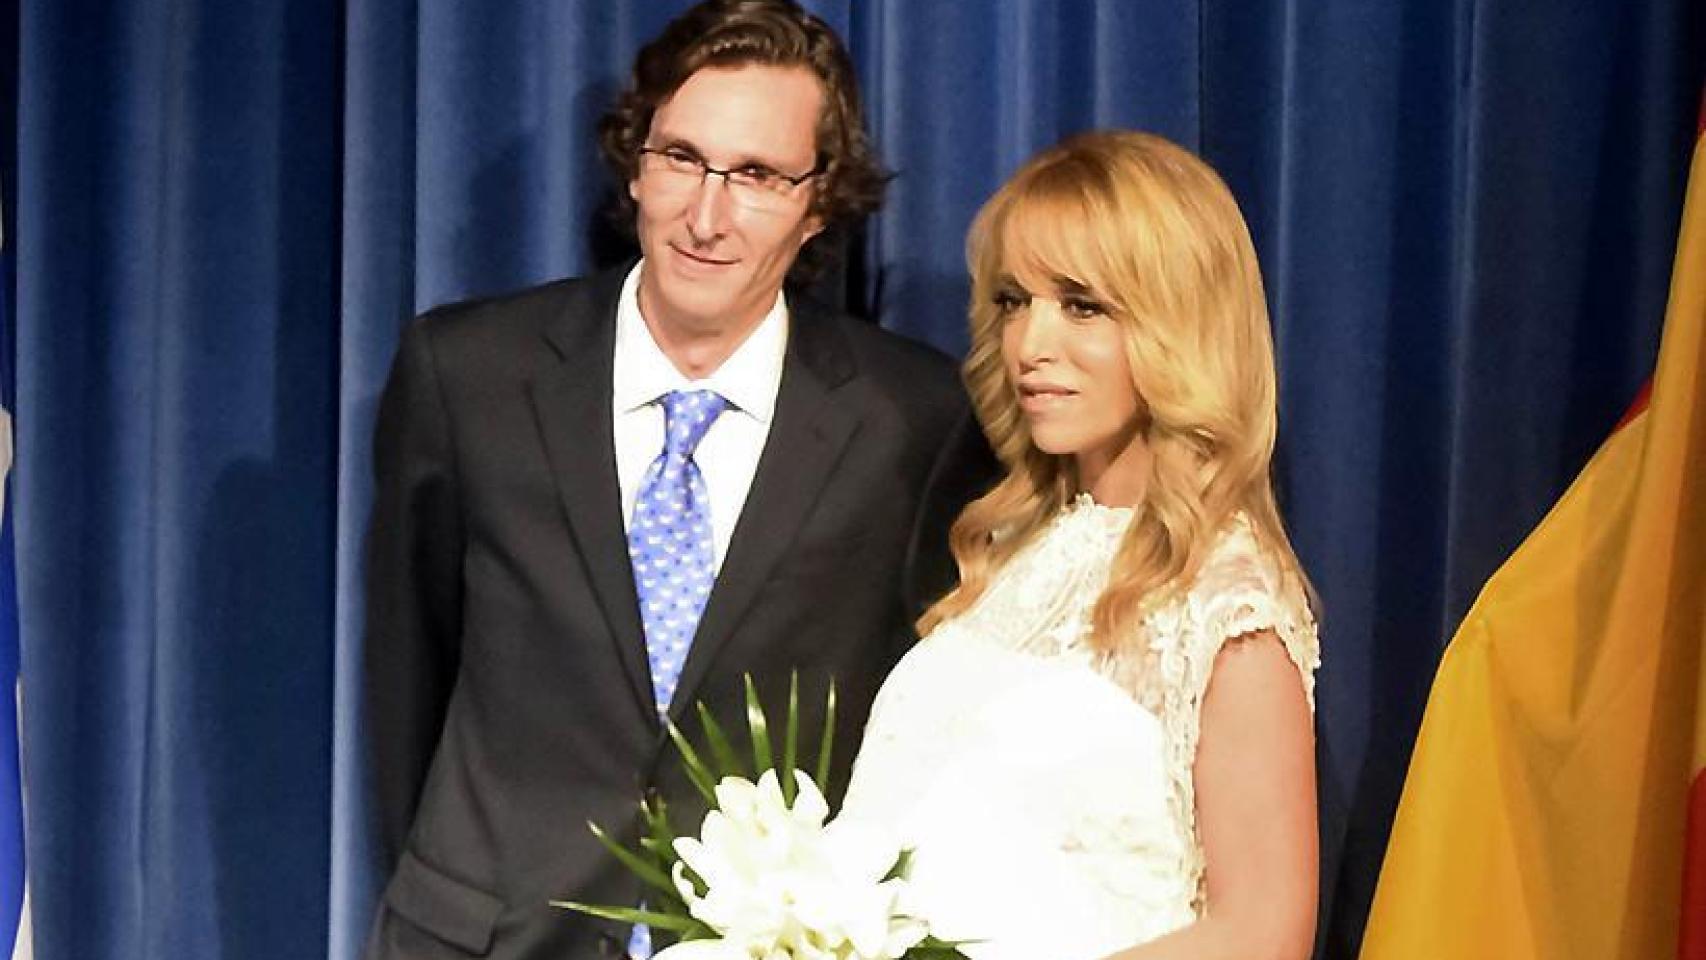 Fernando Gómez Acebo y Nadia el día de su boda.